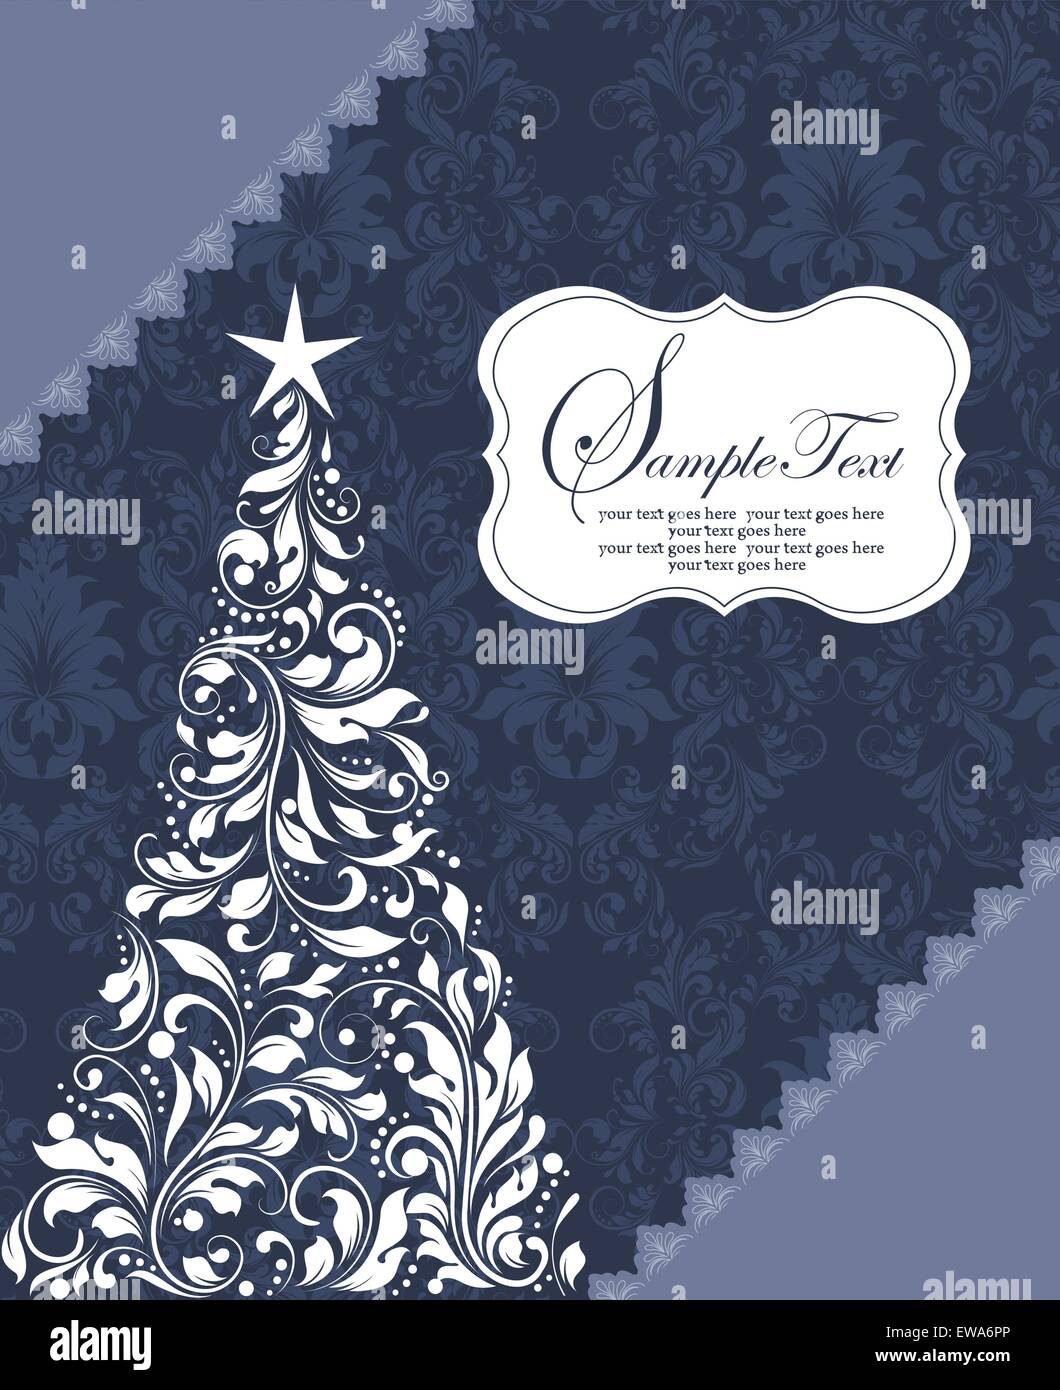 Tarjeta de navidad con ornamentadas Vintage Retro elegante diseño floral abstracto, árbol con flores blancas y hojas en gris azulado Ilustración del Vector